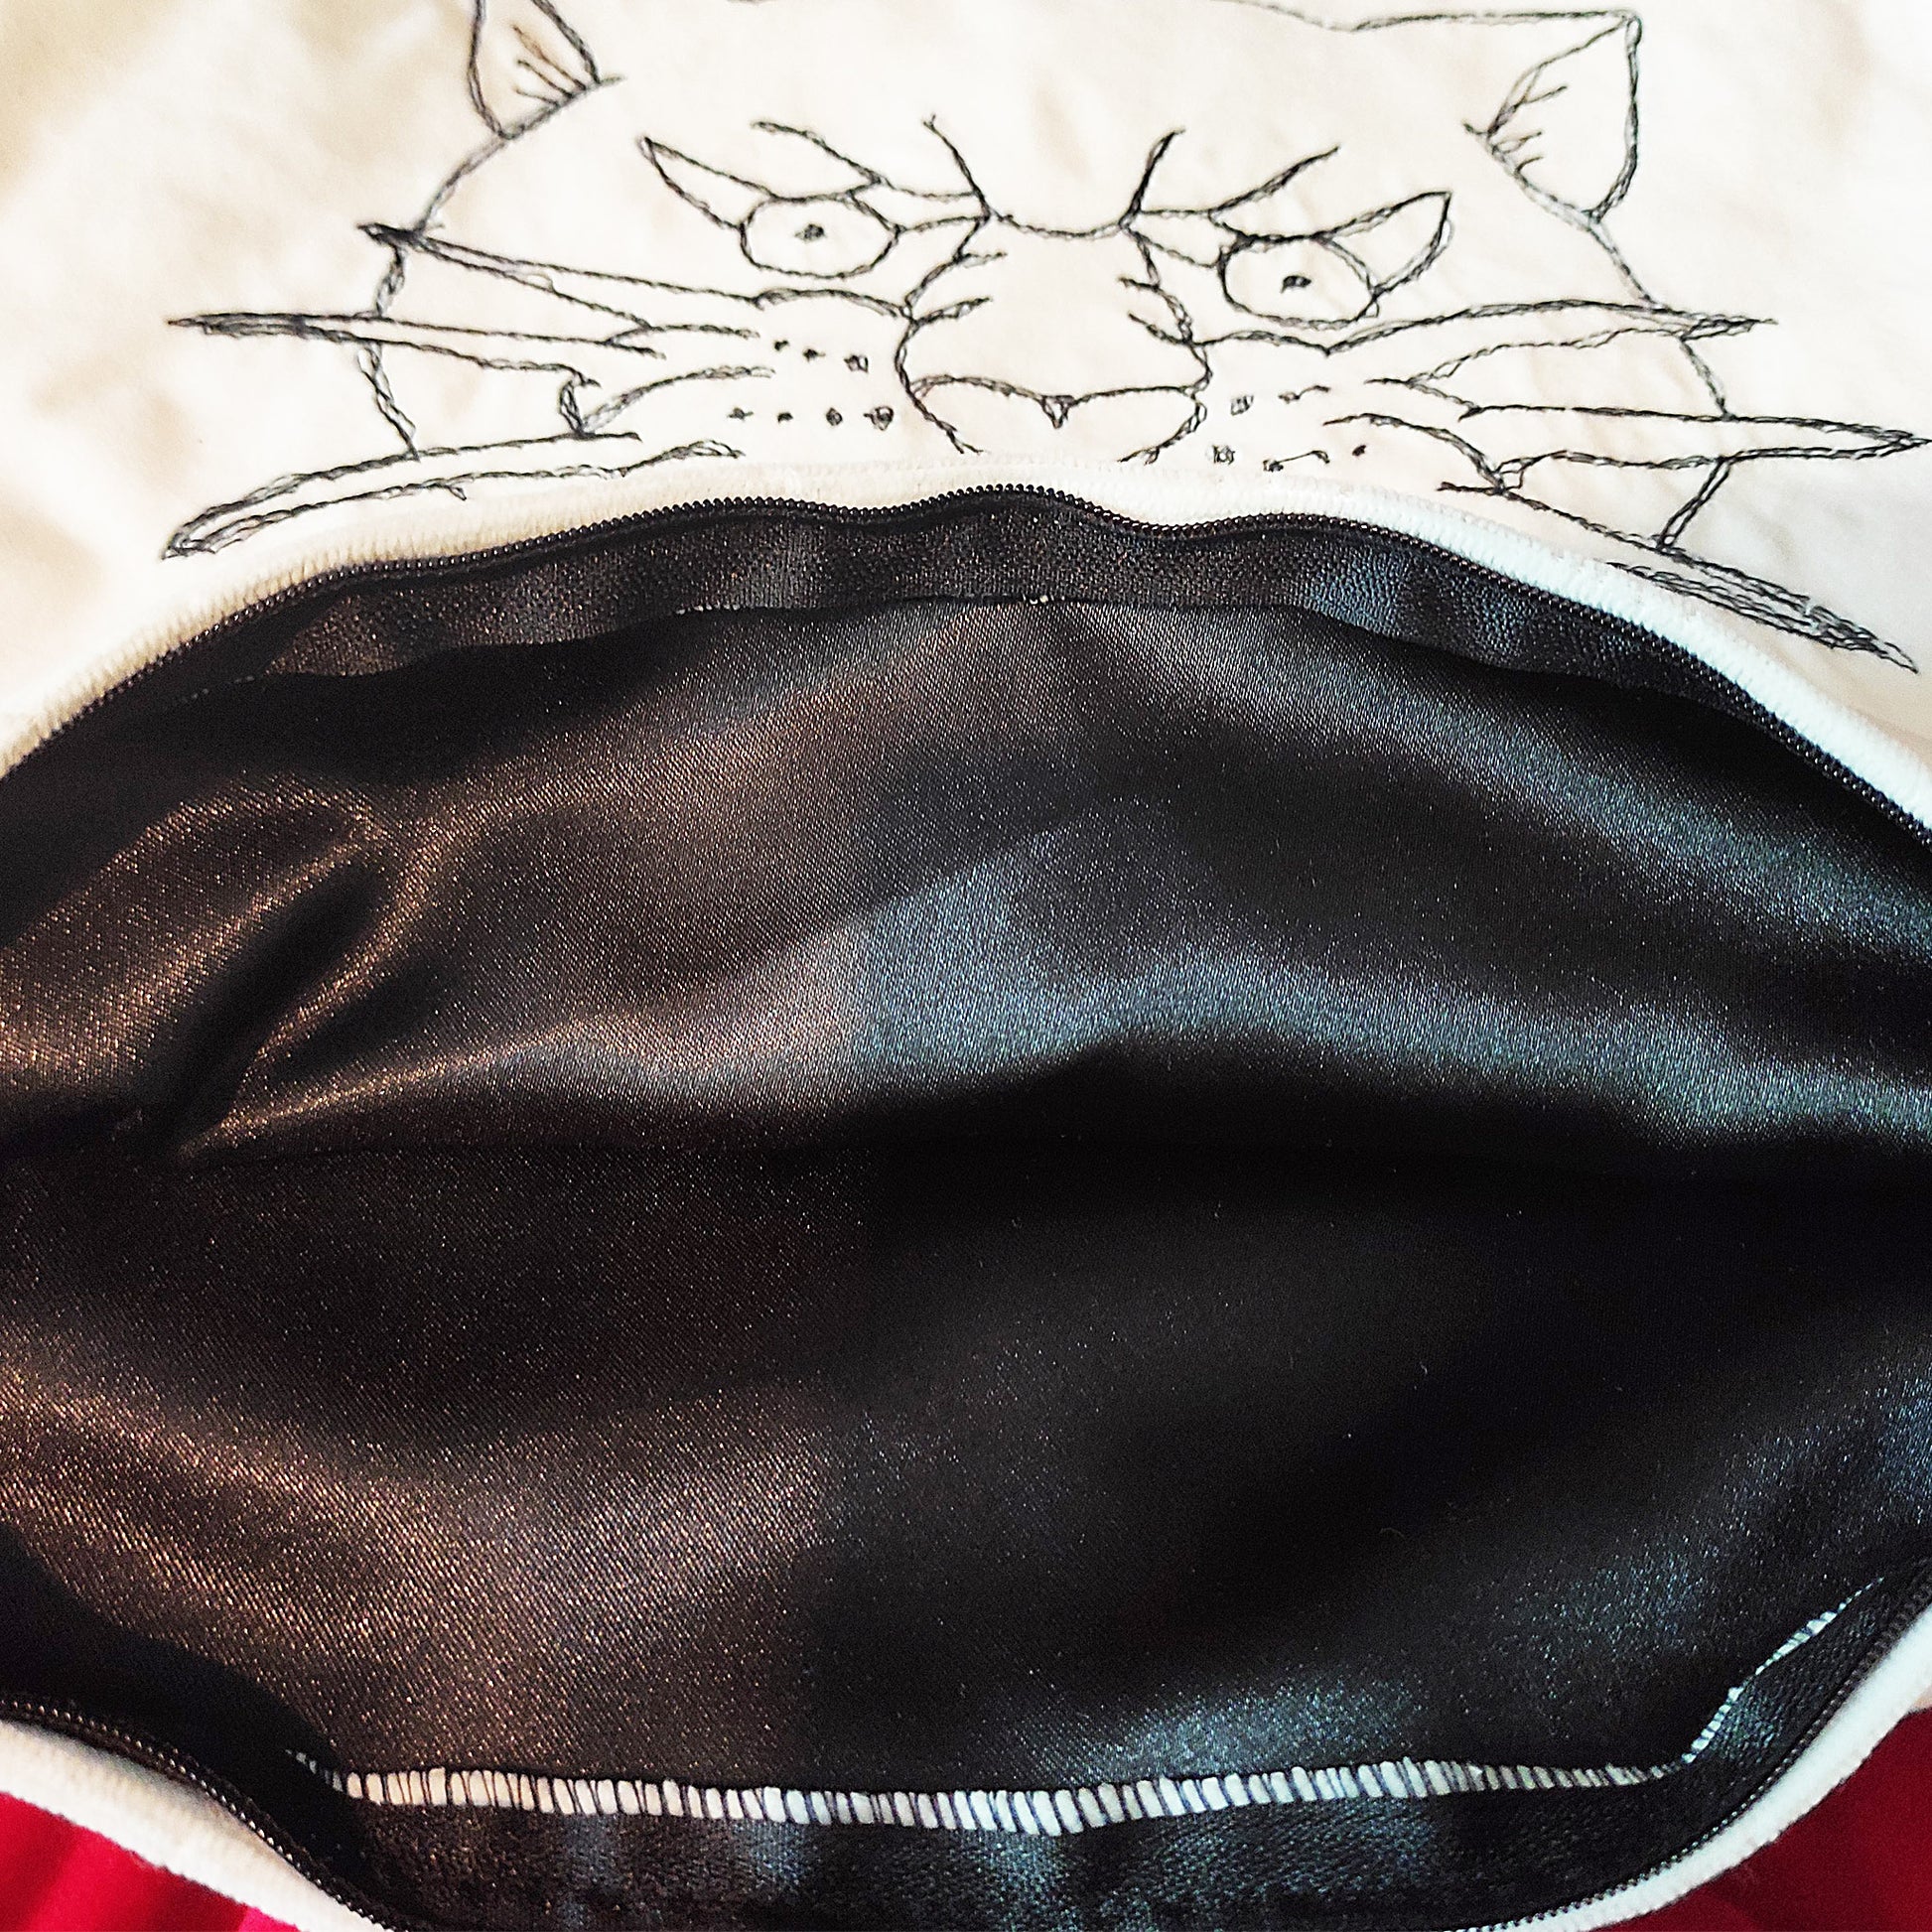 Der Kissenbezug hat einen Nähgemalten Oldschool Panther-Kopf und in Kombination mit den Quasten und dem Samtstoff erzeugt er einen edlen Look.